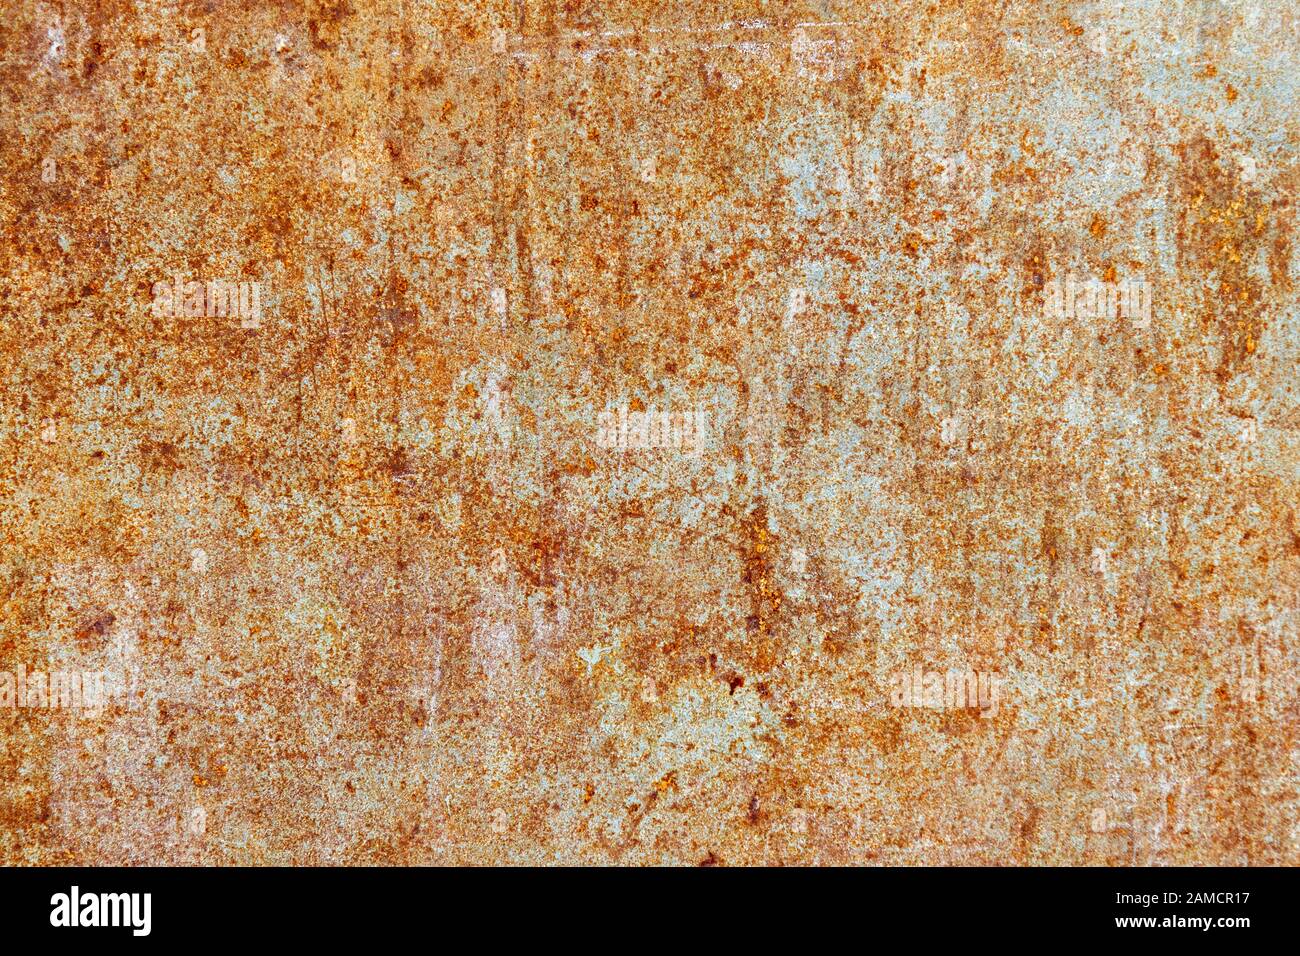 Hoja de metal oxidado - la textura de la superficie Foto de stock